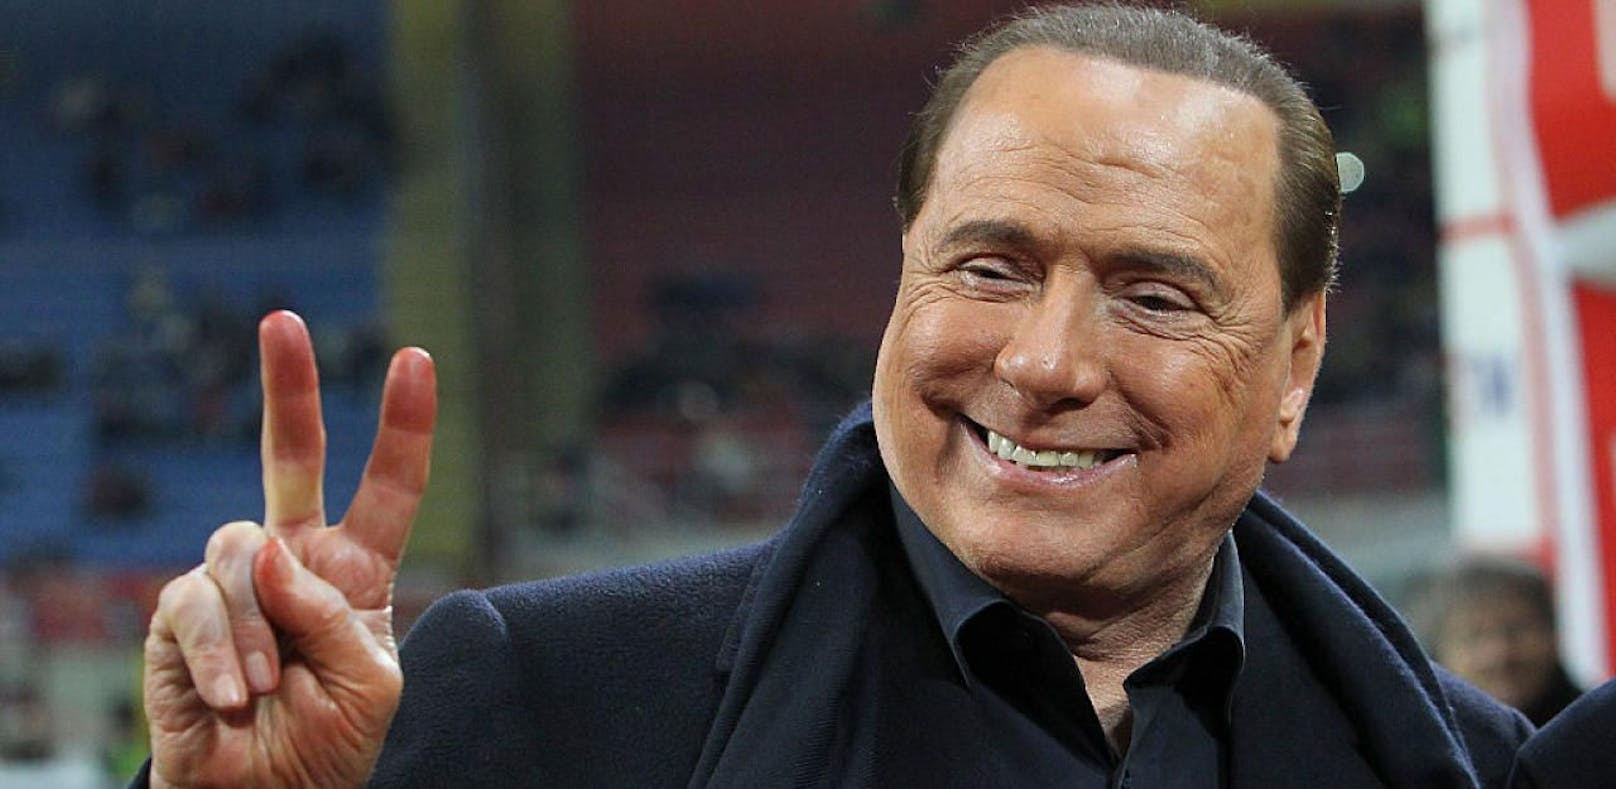 Pasta mit einer neuen Währung zahlen? Für Berlusconi eine Überlegung wert.